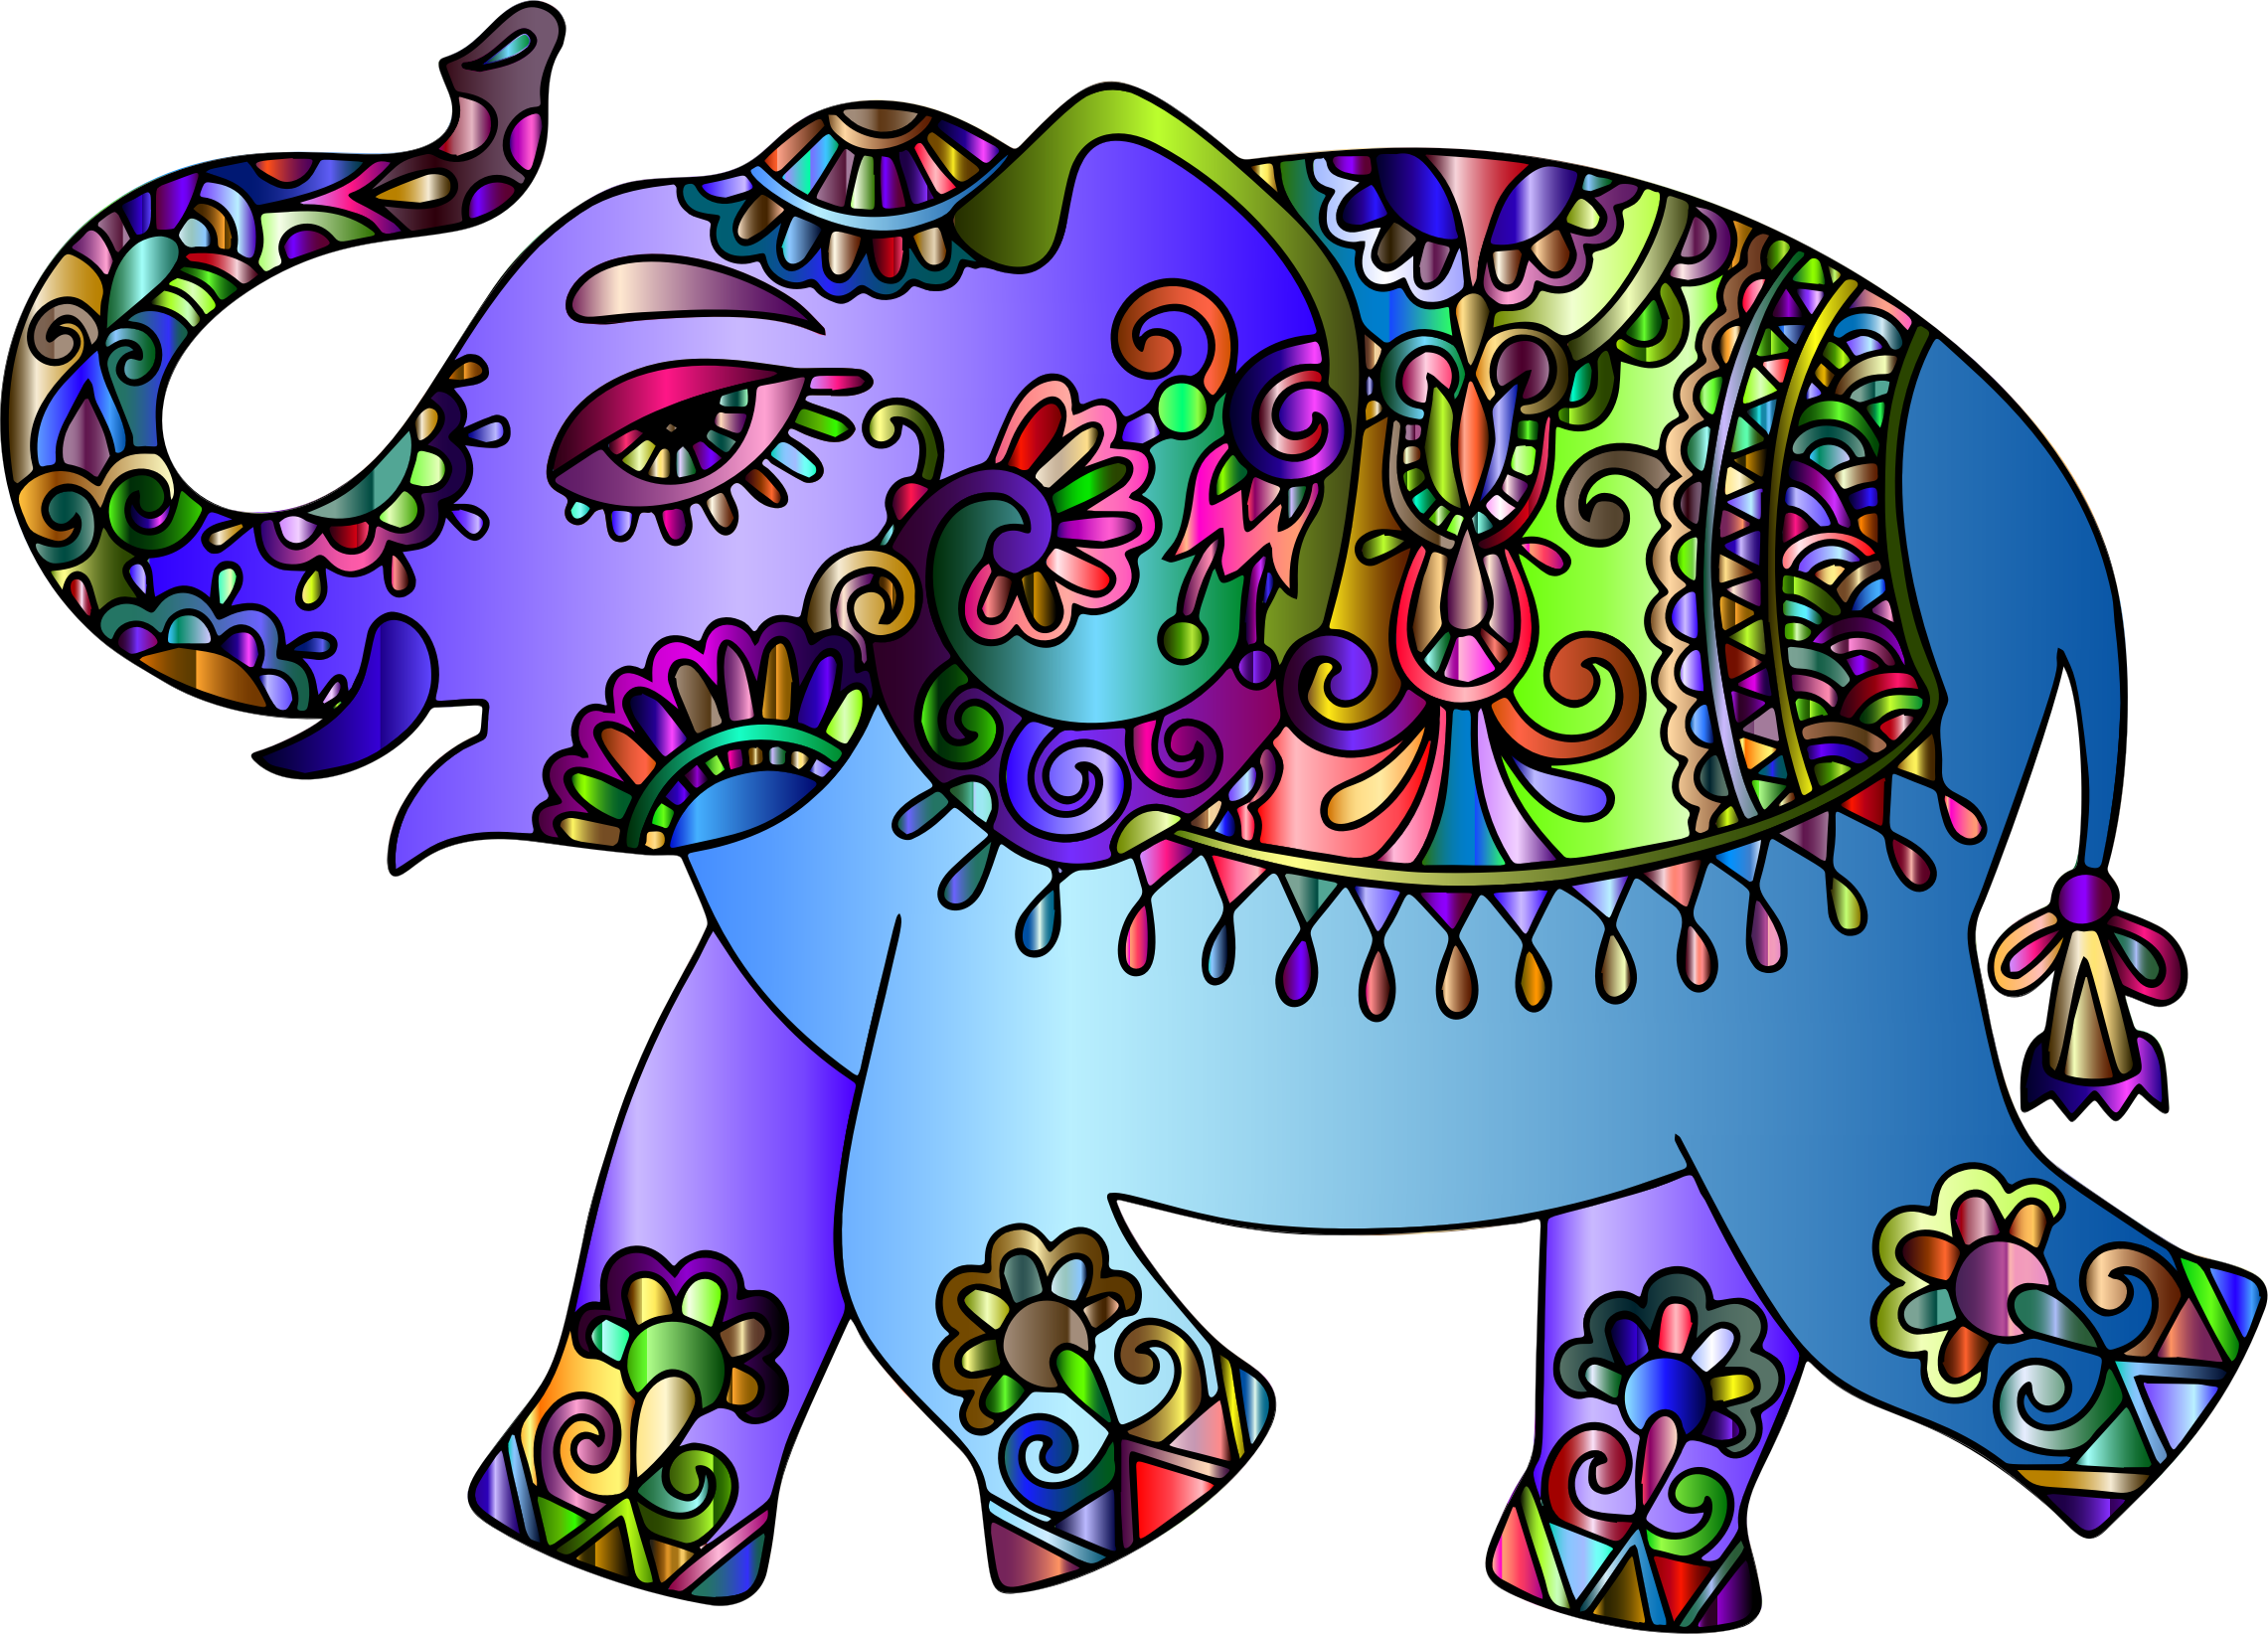 Medium Image - Indian Elephant (2282x1644)